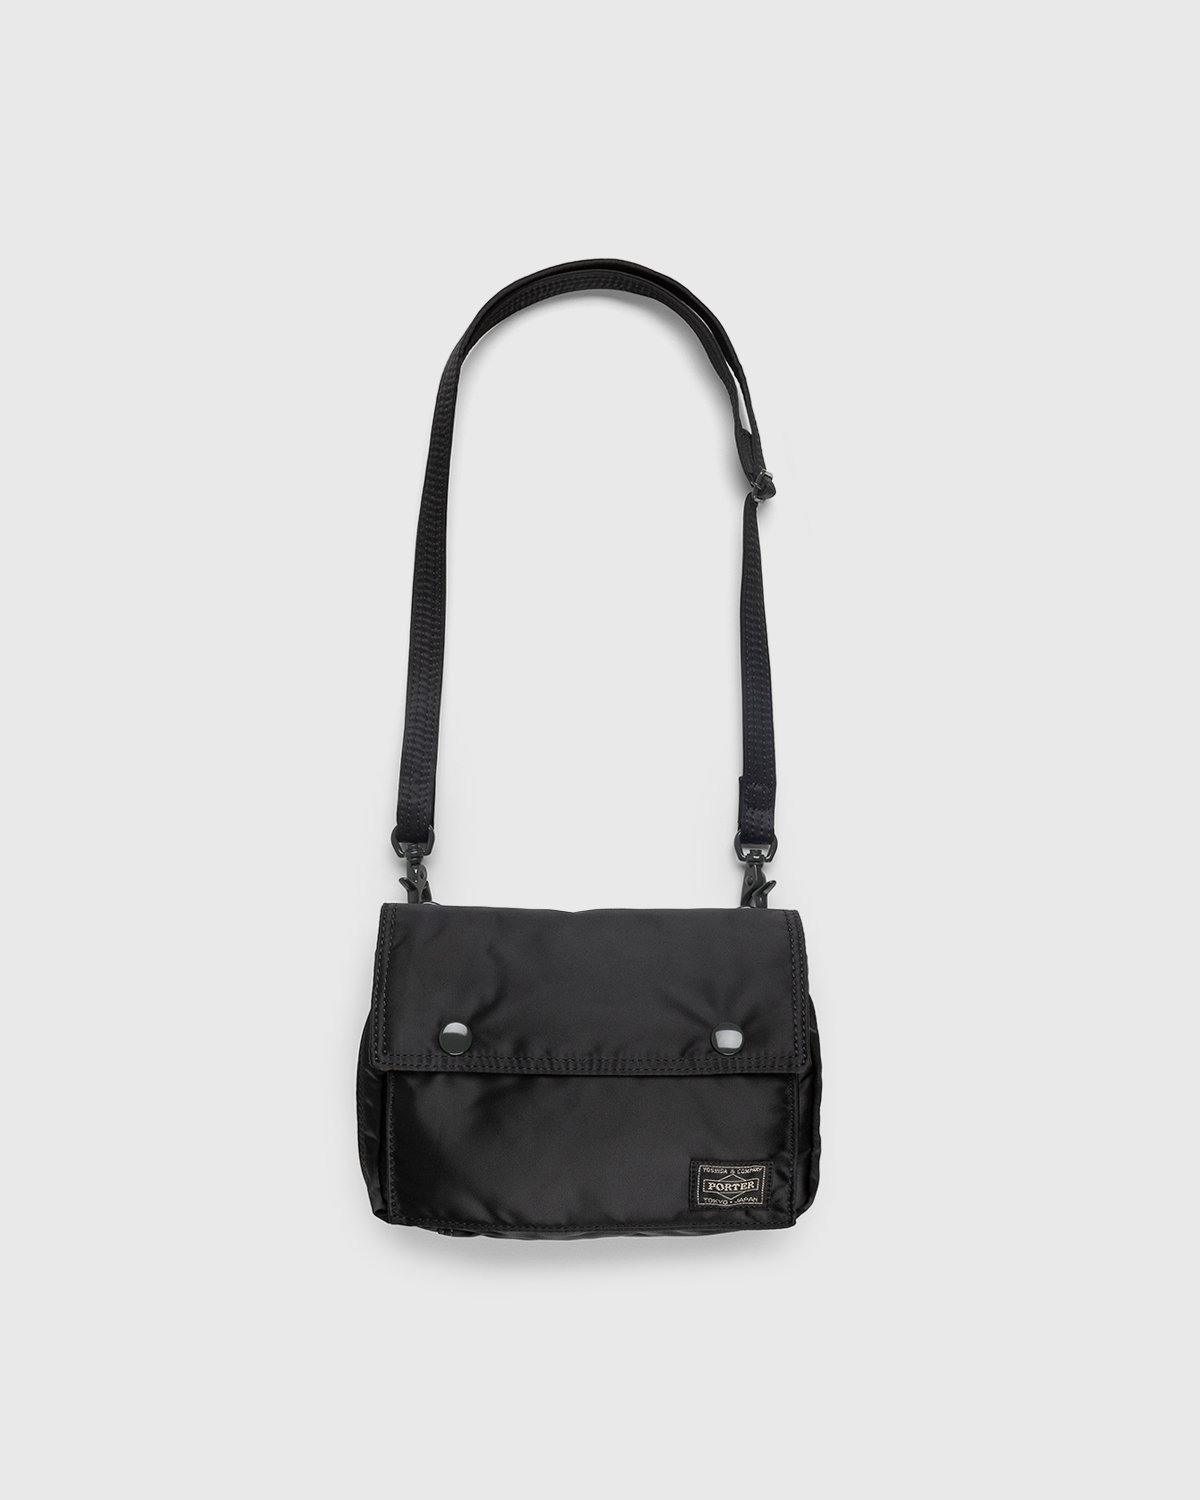 Porter-Yoshida & Co. - Tanker Clip Shoulder Bag Black - Accessories - Black - Image 1